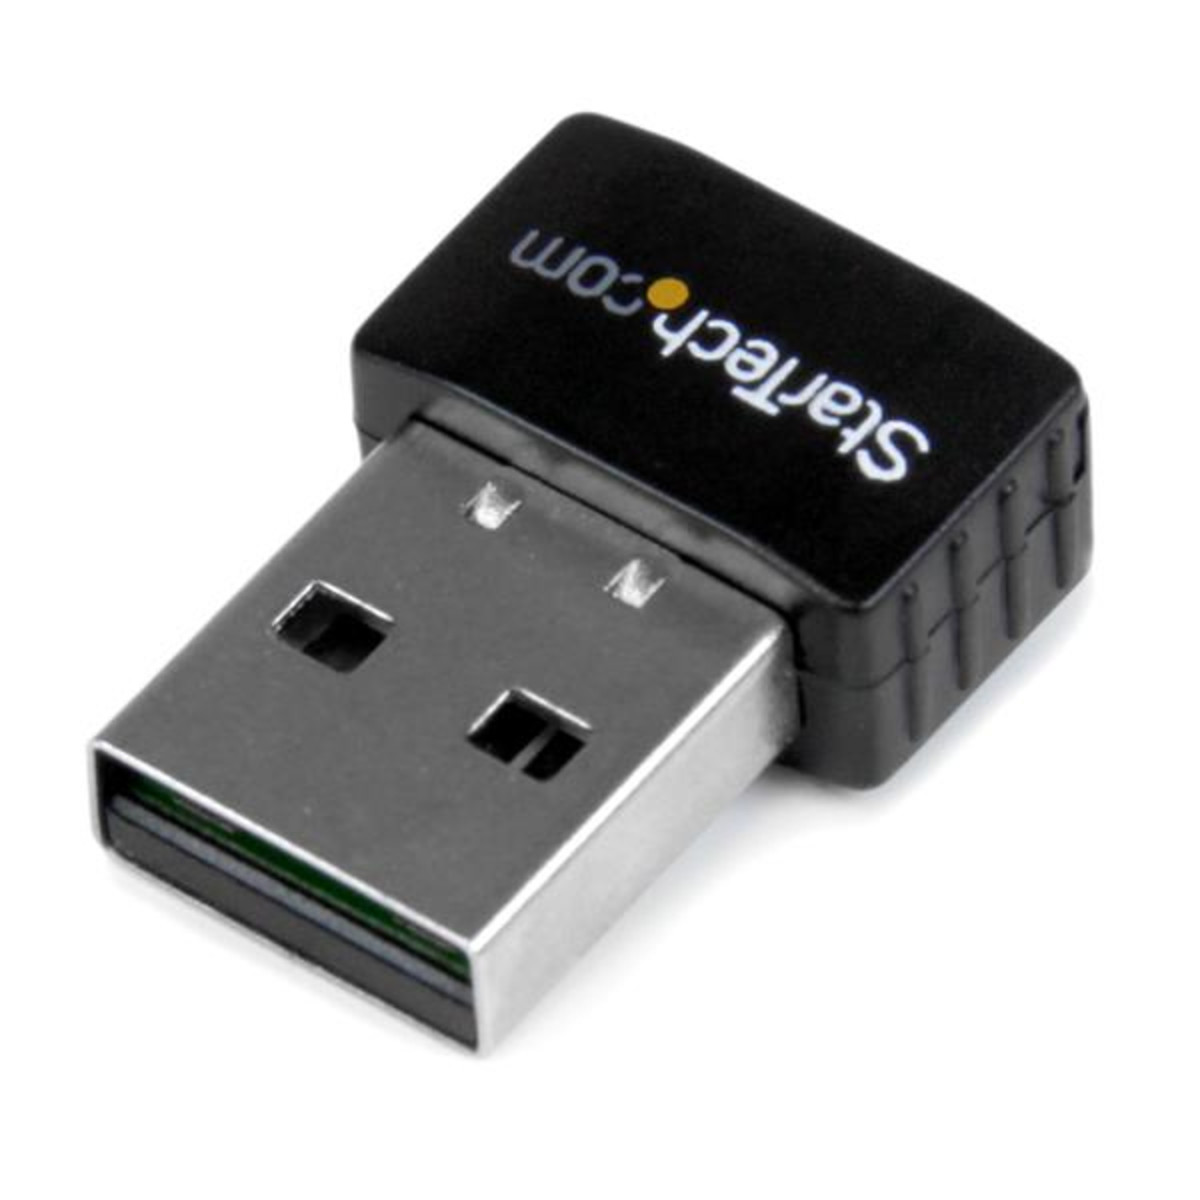 USB 2.0 Mini Wireless-N Network Adapter